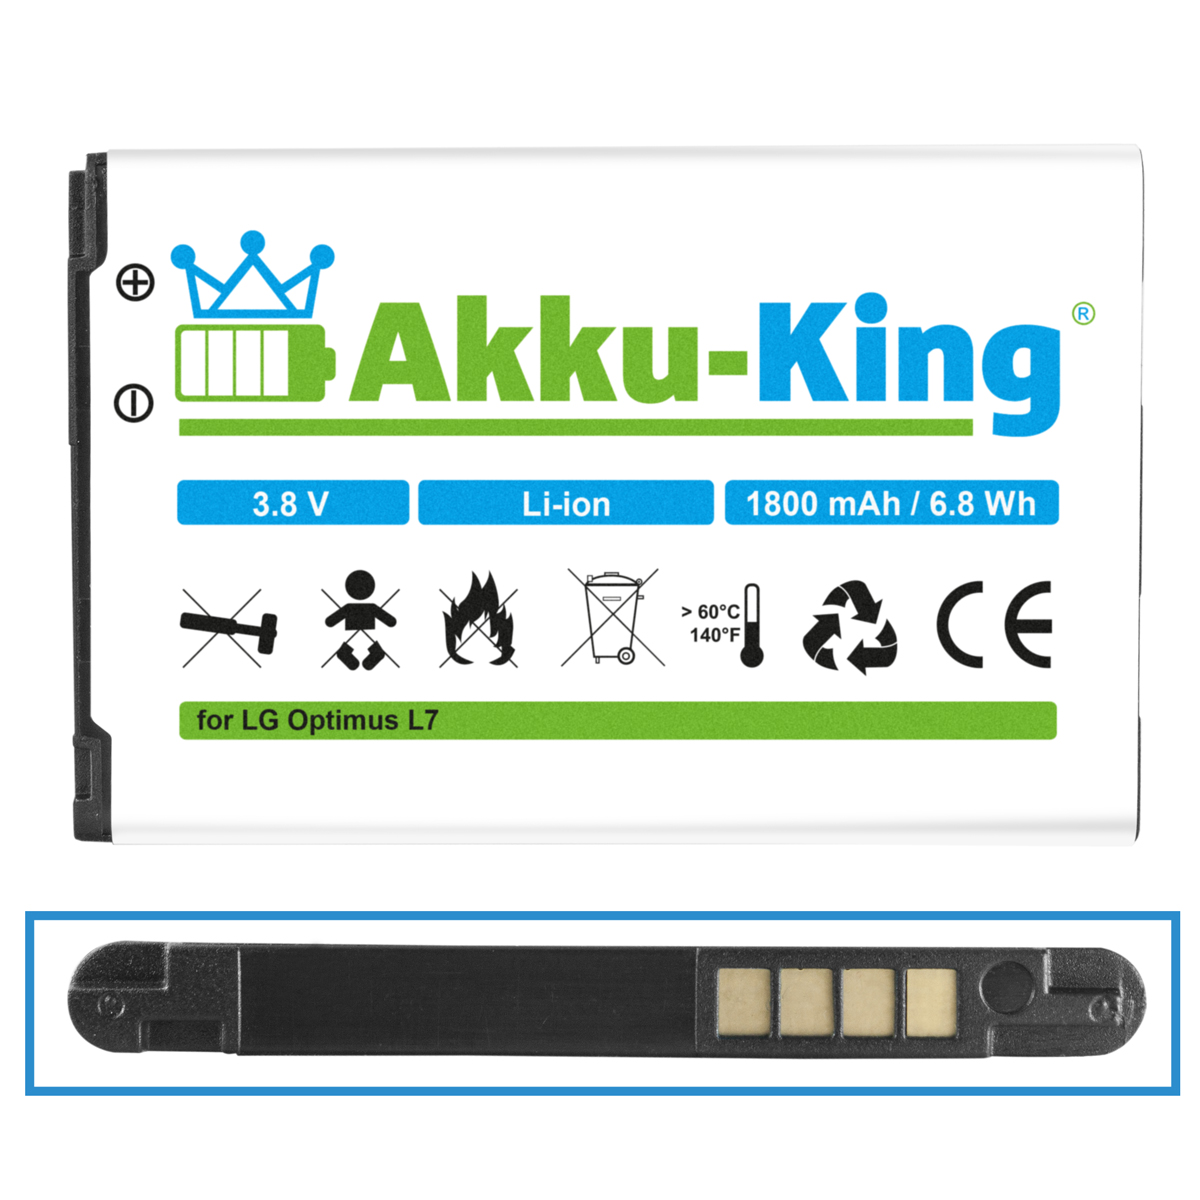 AKKU-KING Akku Volt, mit 3.8 Li-Ion BL-44JH Handy-Akku, 1800mAh LG kompatibel